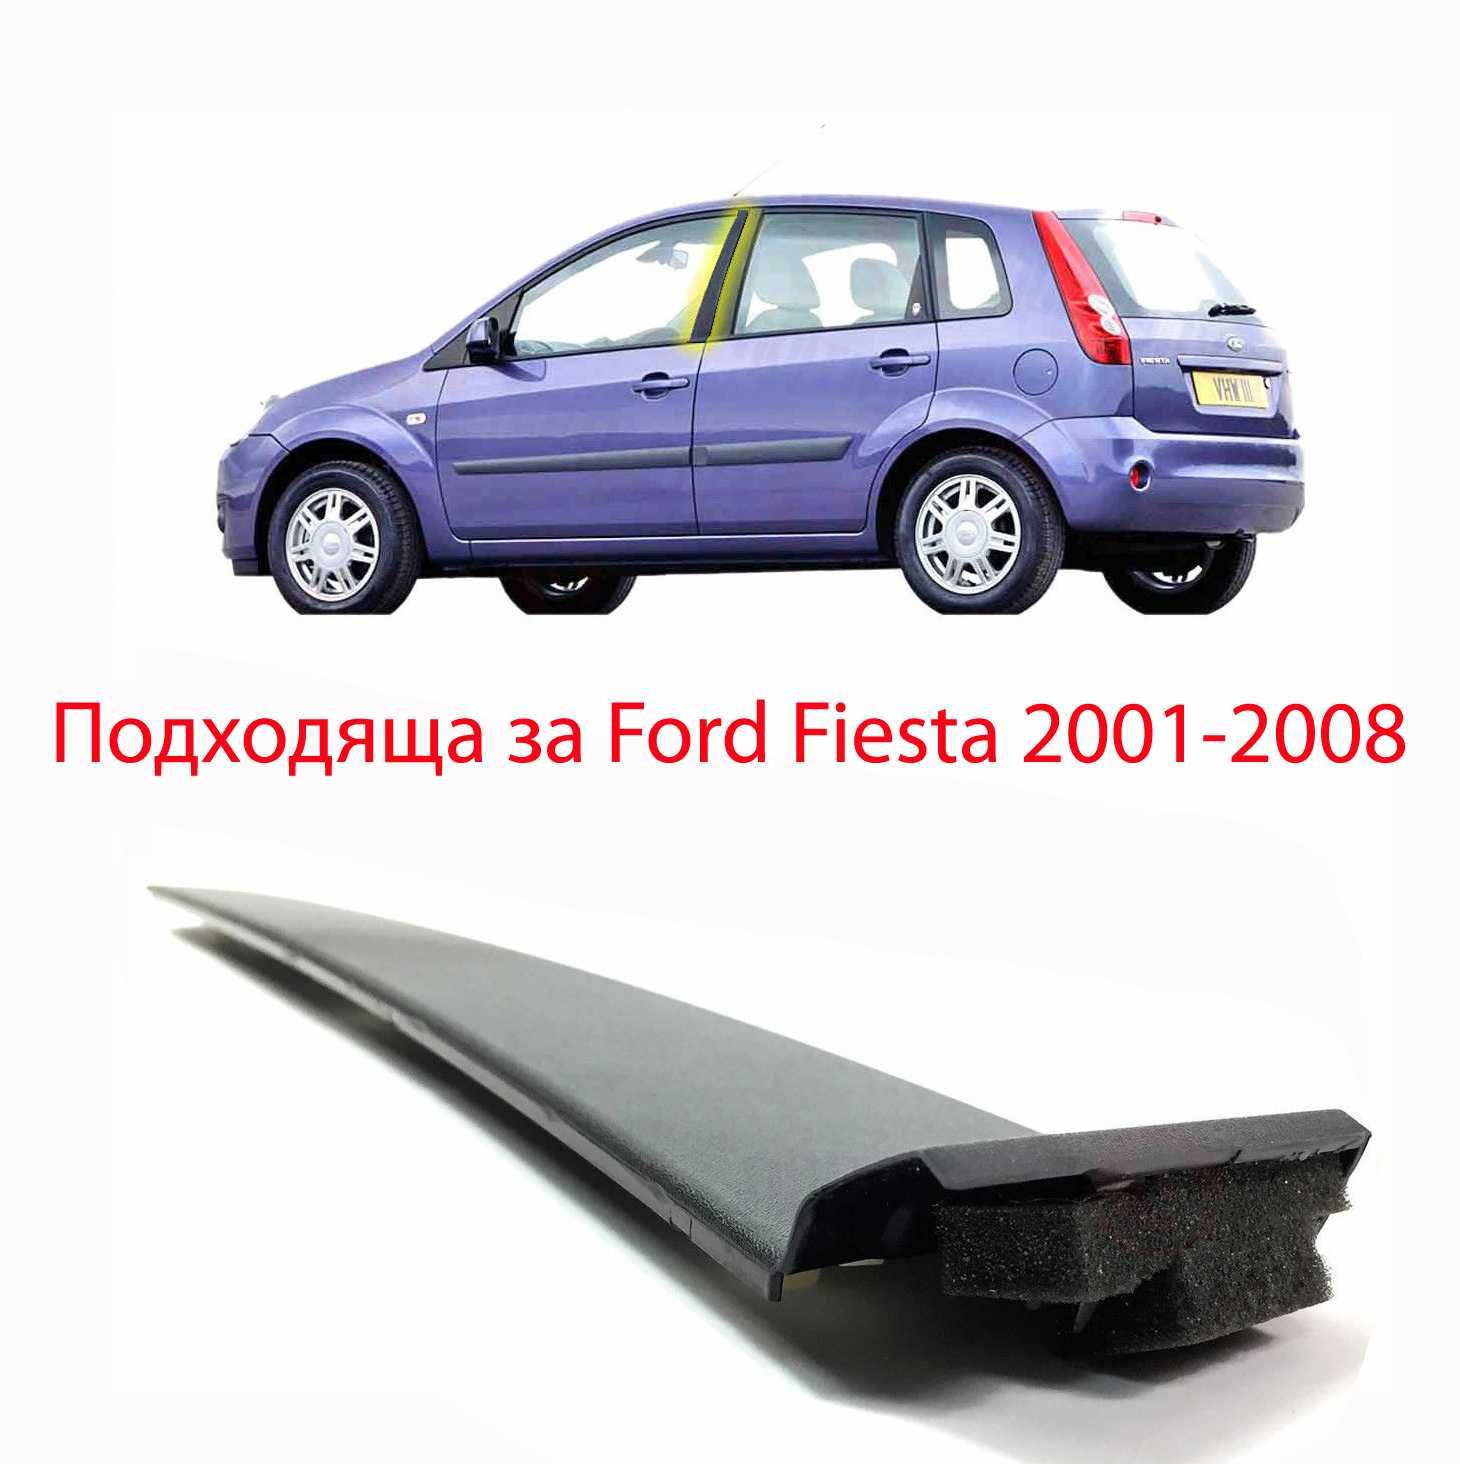 Пласмасова Лайсна прозорец за Форд Фиеста Ford Ffiesta 2001-2008